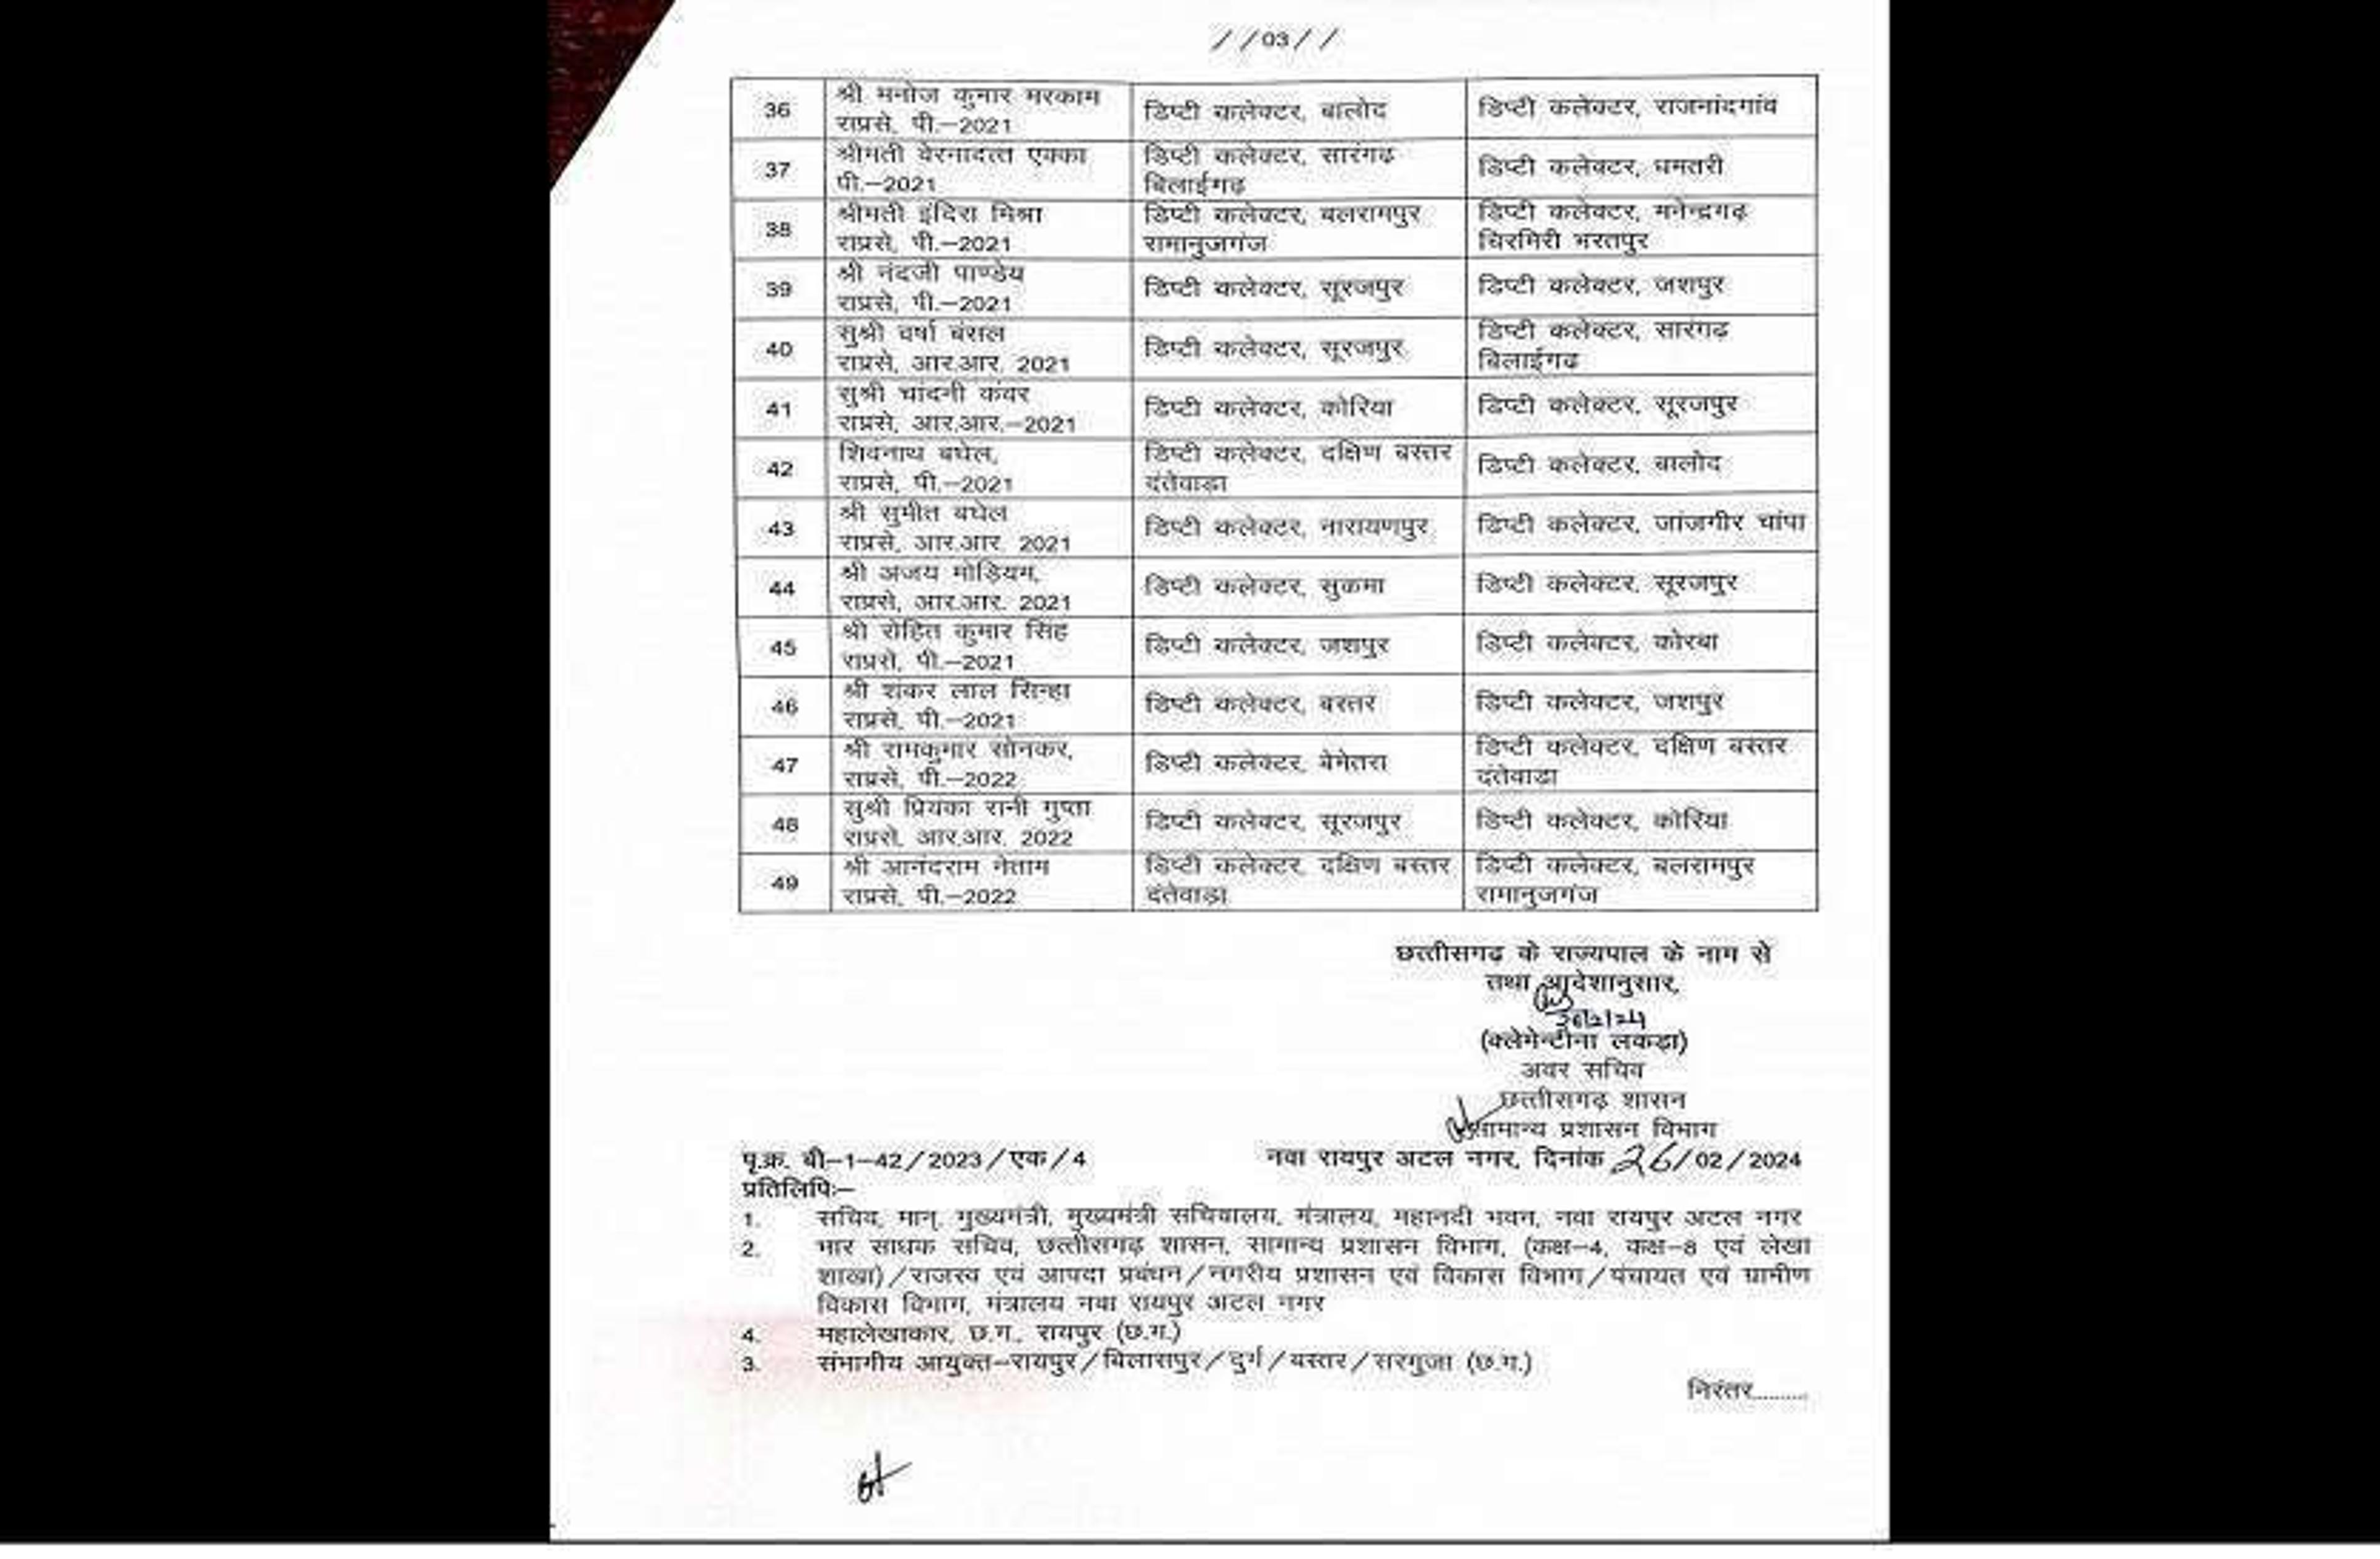 IAS Transfer List : छत्तीसगढ़ में 49 कलेक्टरों का तबादला, सामान्य प्रशासन ने जारी किया आदेश, देखें